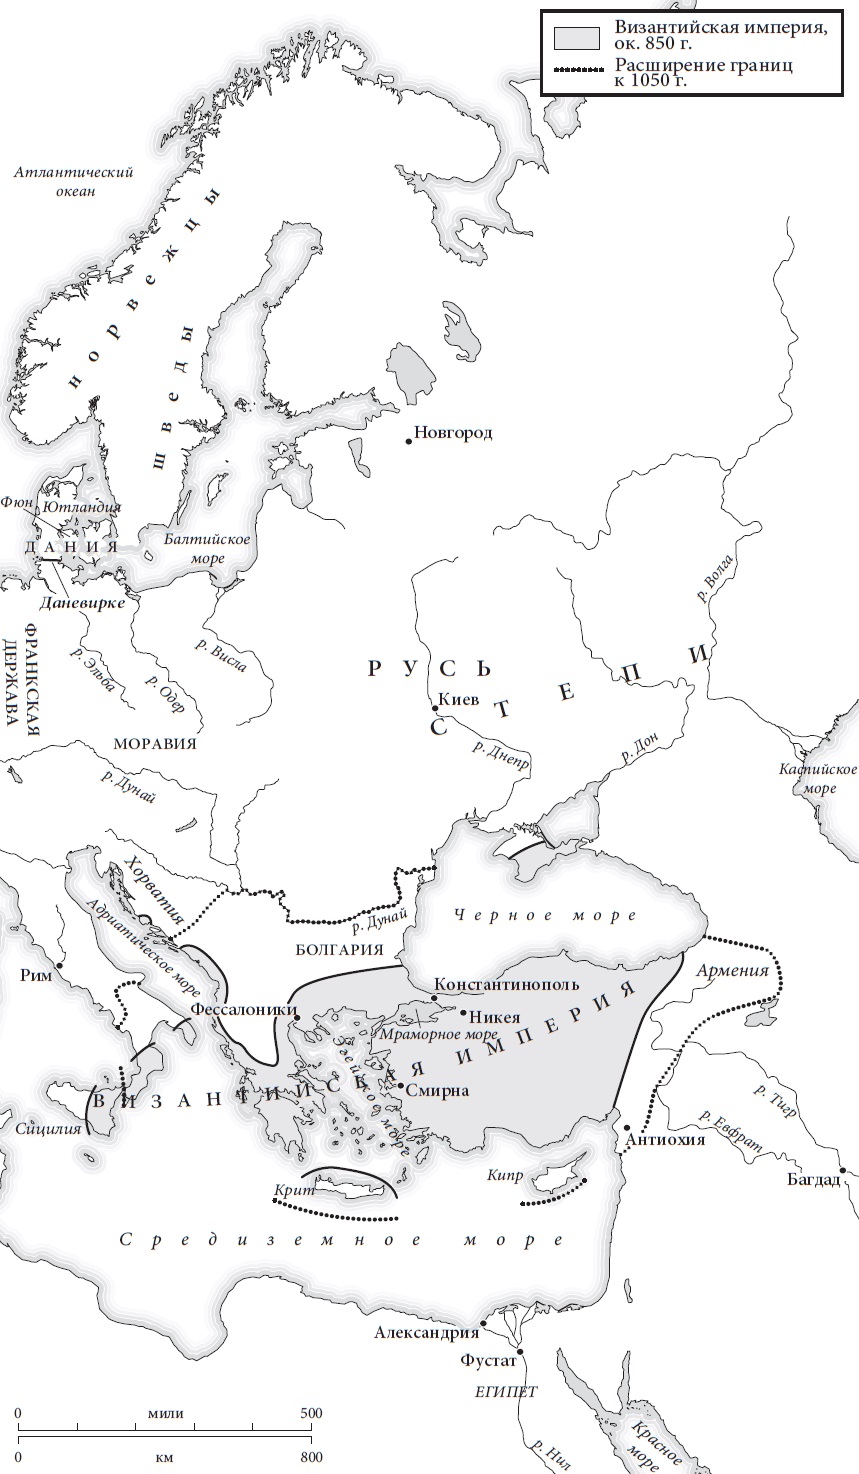 Ris. 2. Vostochnaya Evropa v 850 g